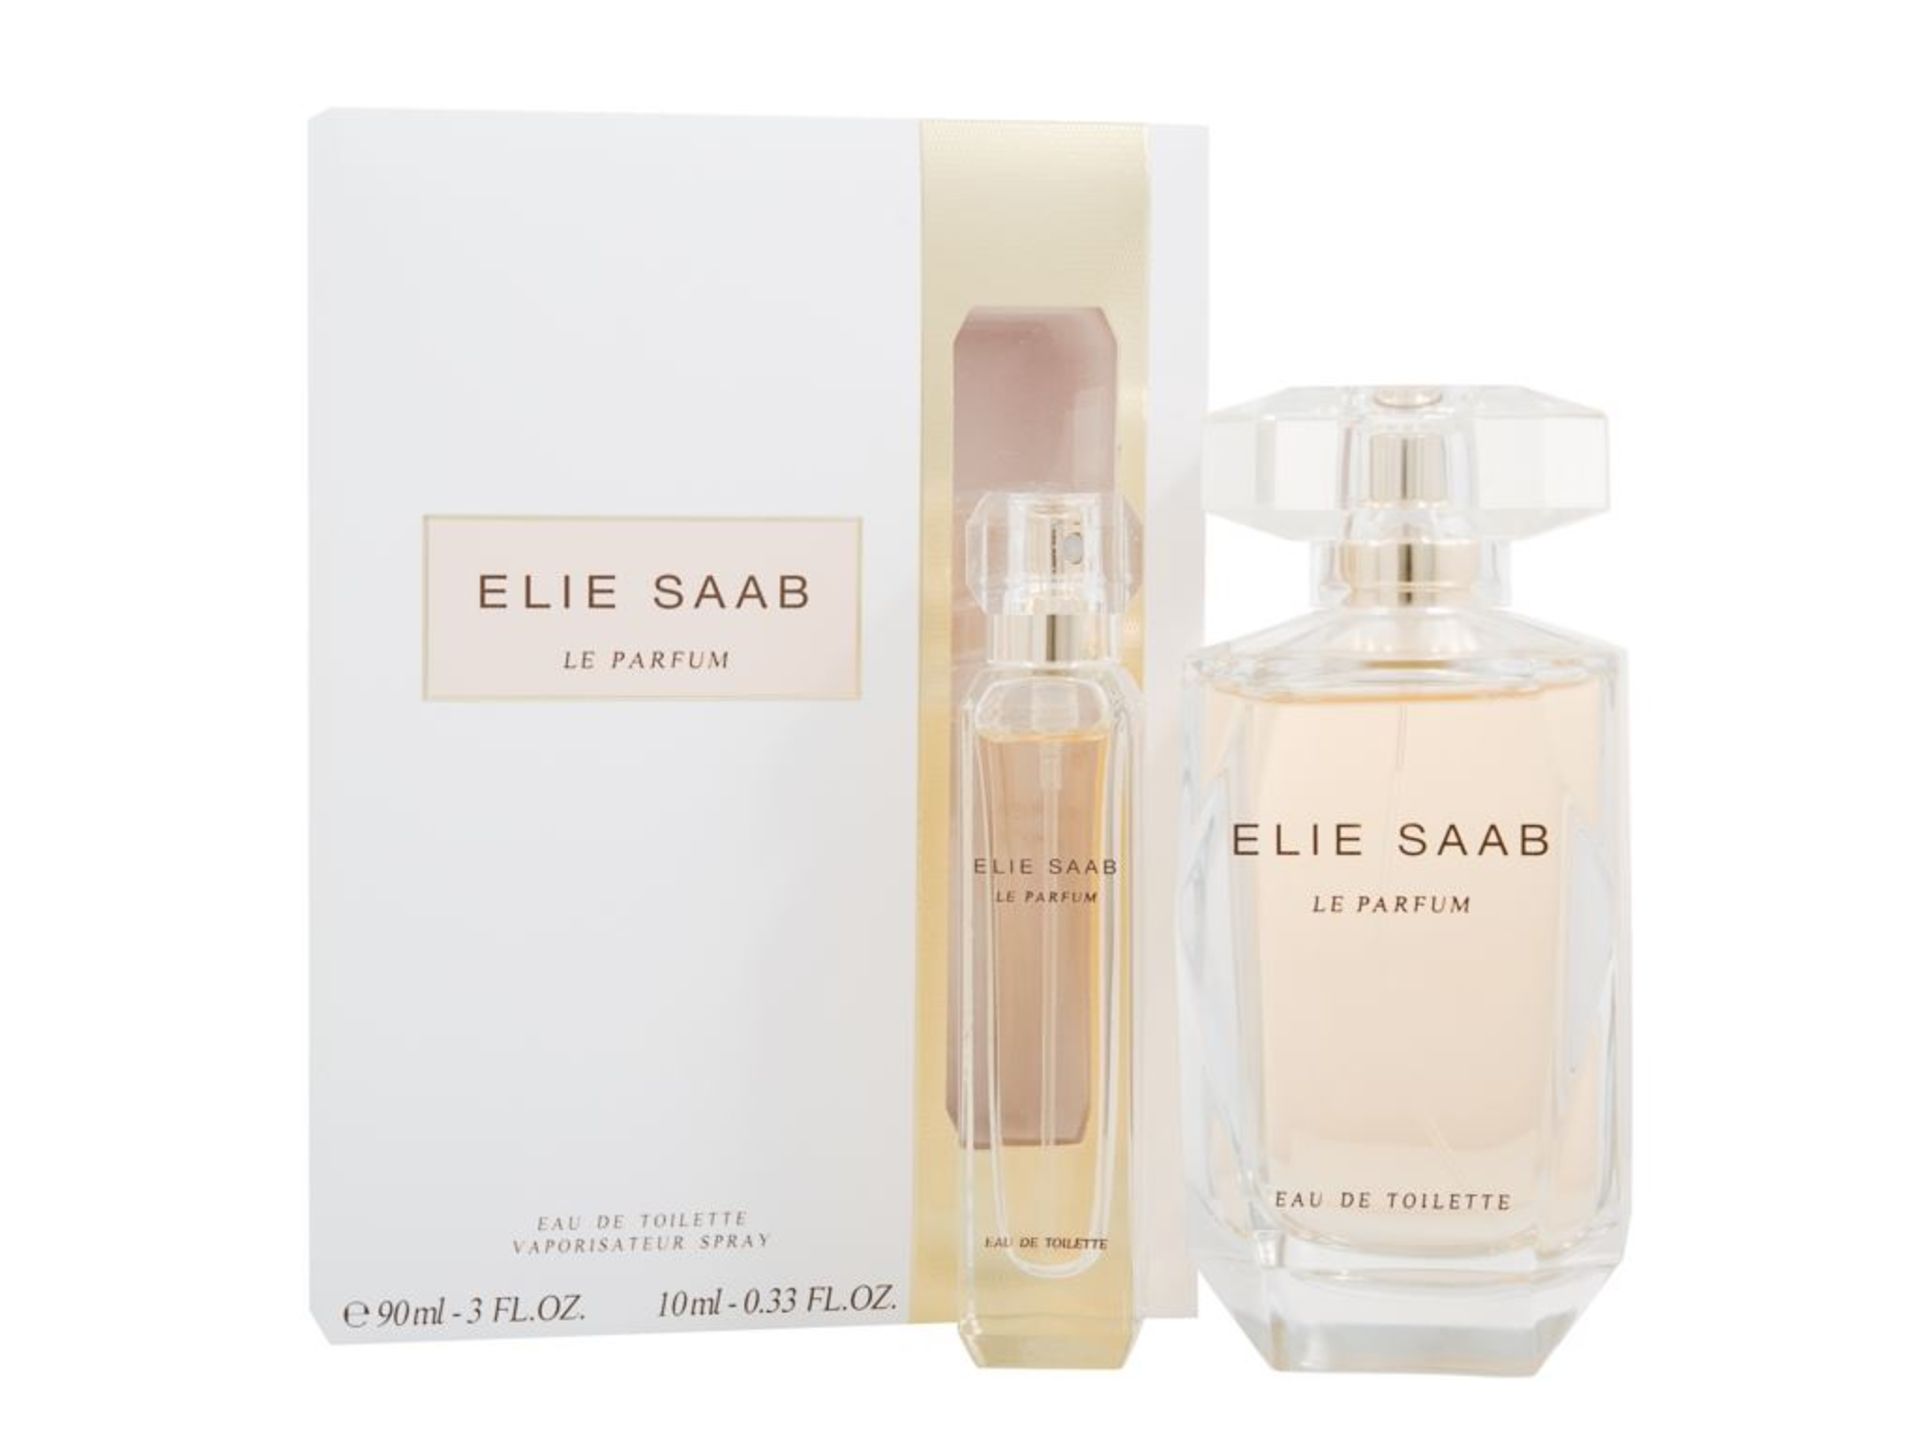 V Brand New 90ml Elie Saab Le Parfum Eau De Toilette Vaporisateur Spray ISP £78.50 (Strawberrynet)